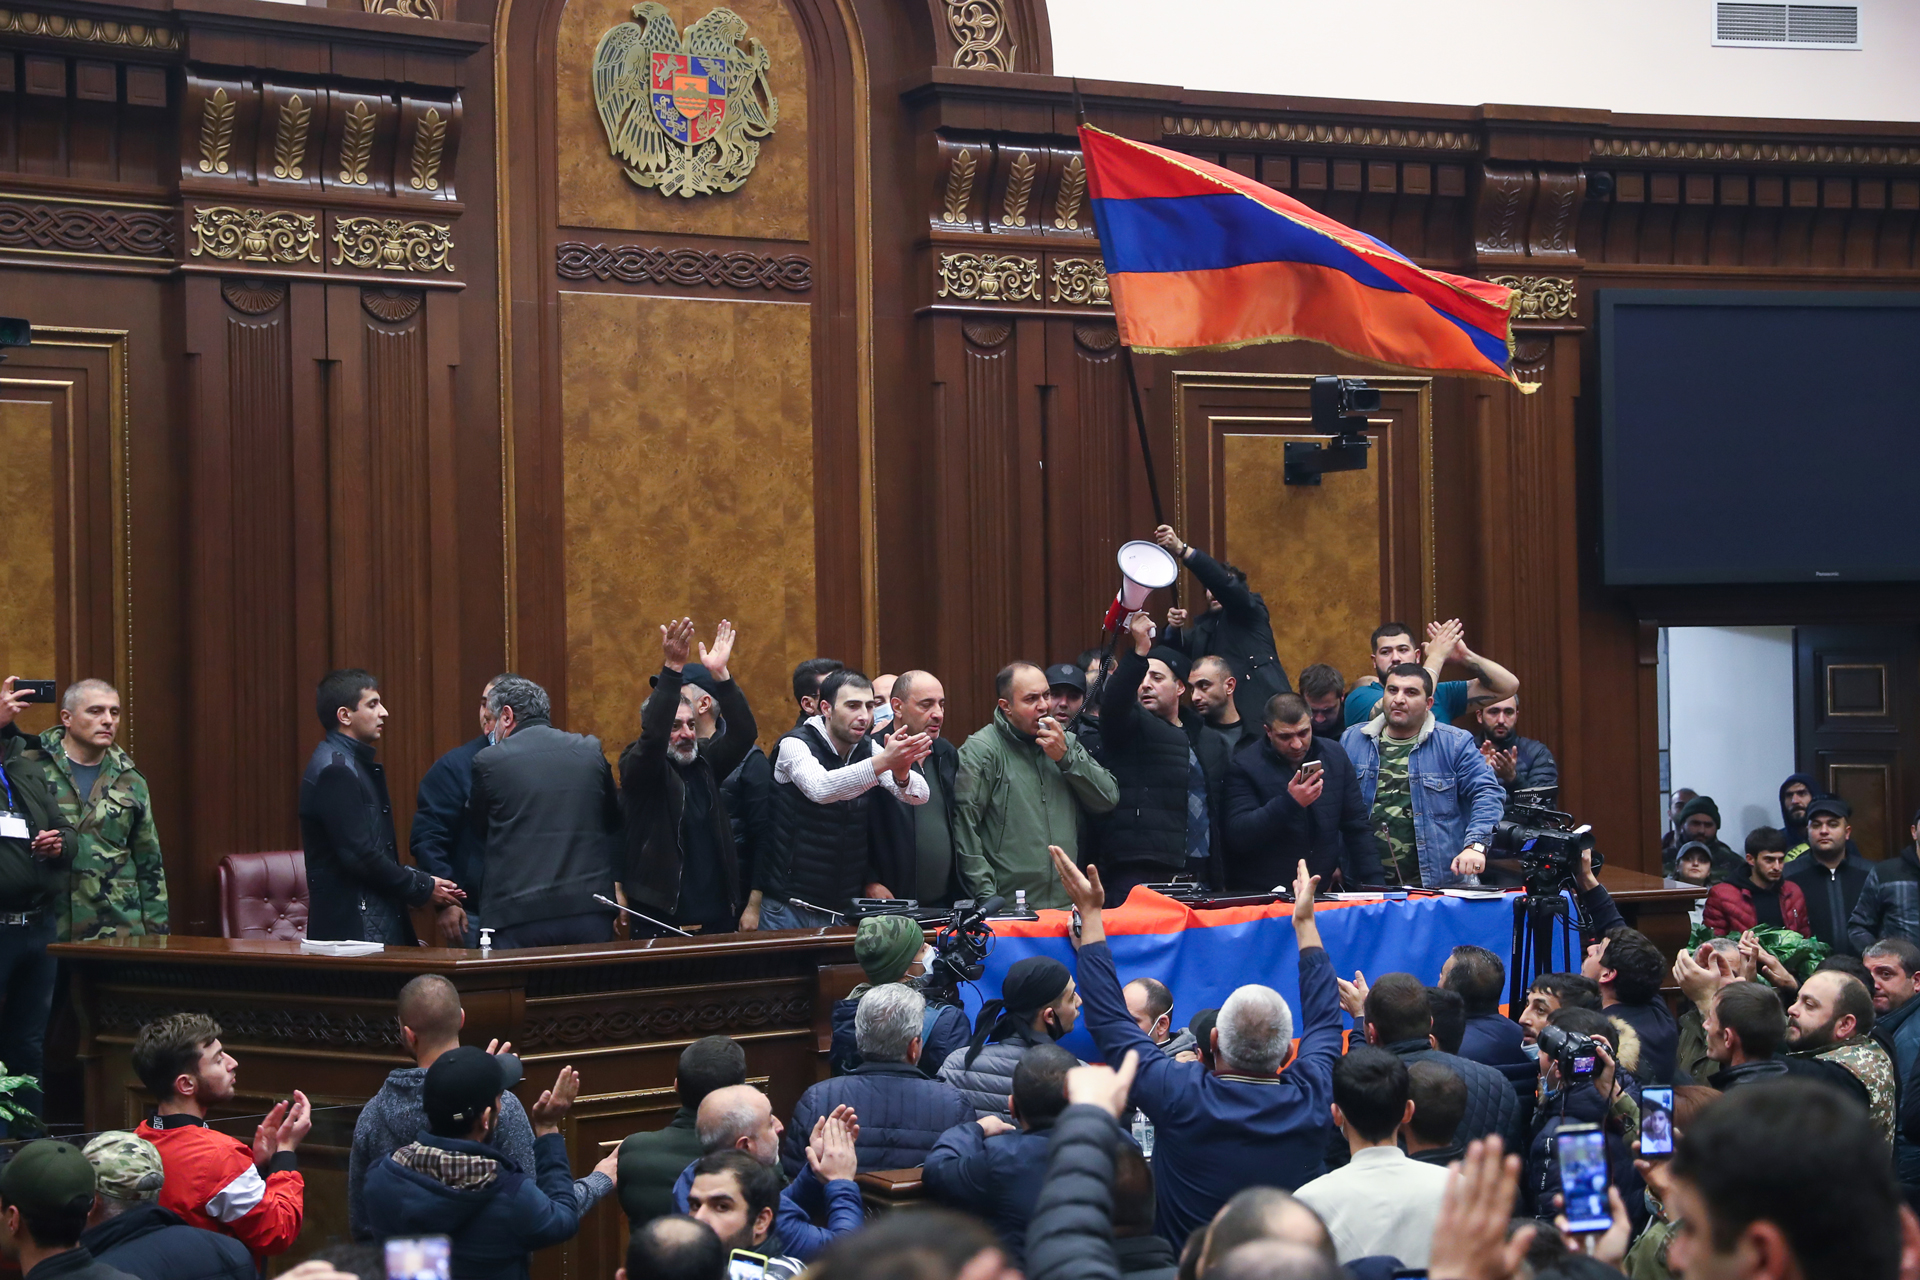 Участники протеста в зале заседаний в здании Национального собрания (парламента) Республики Армения